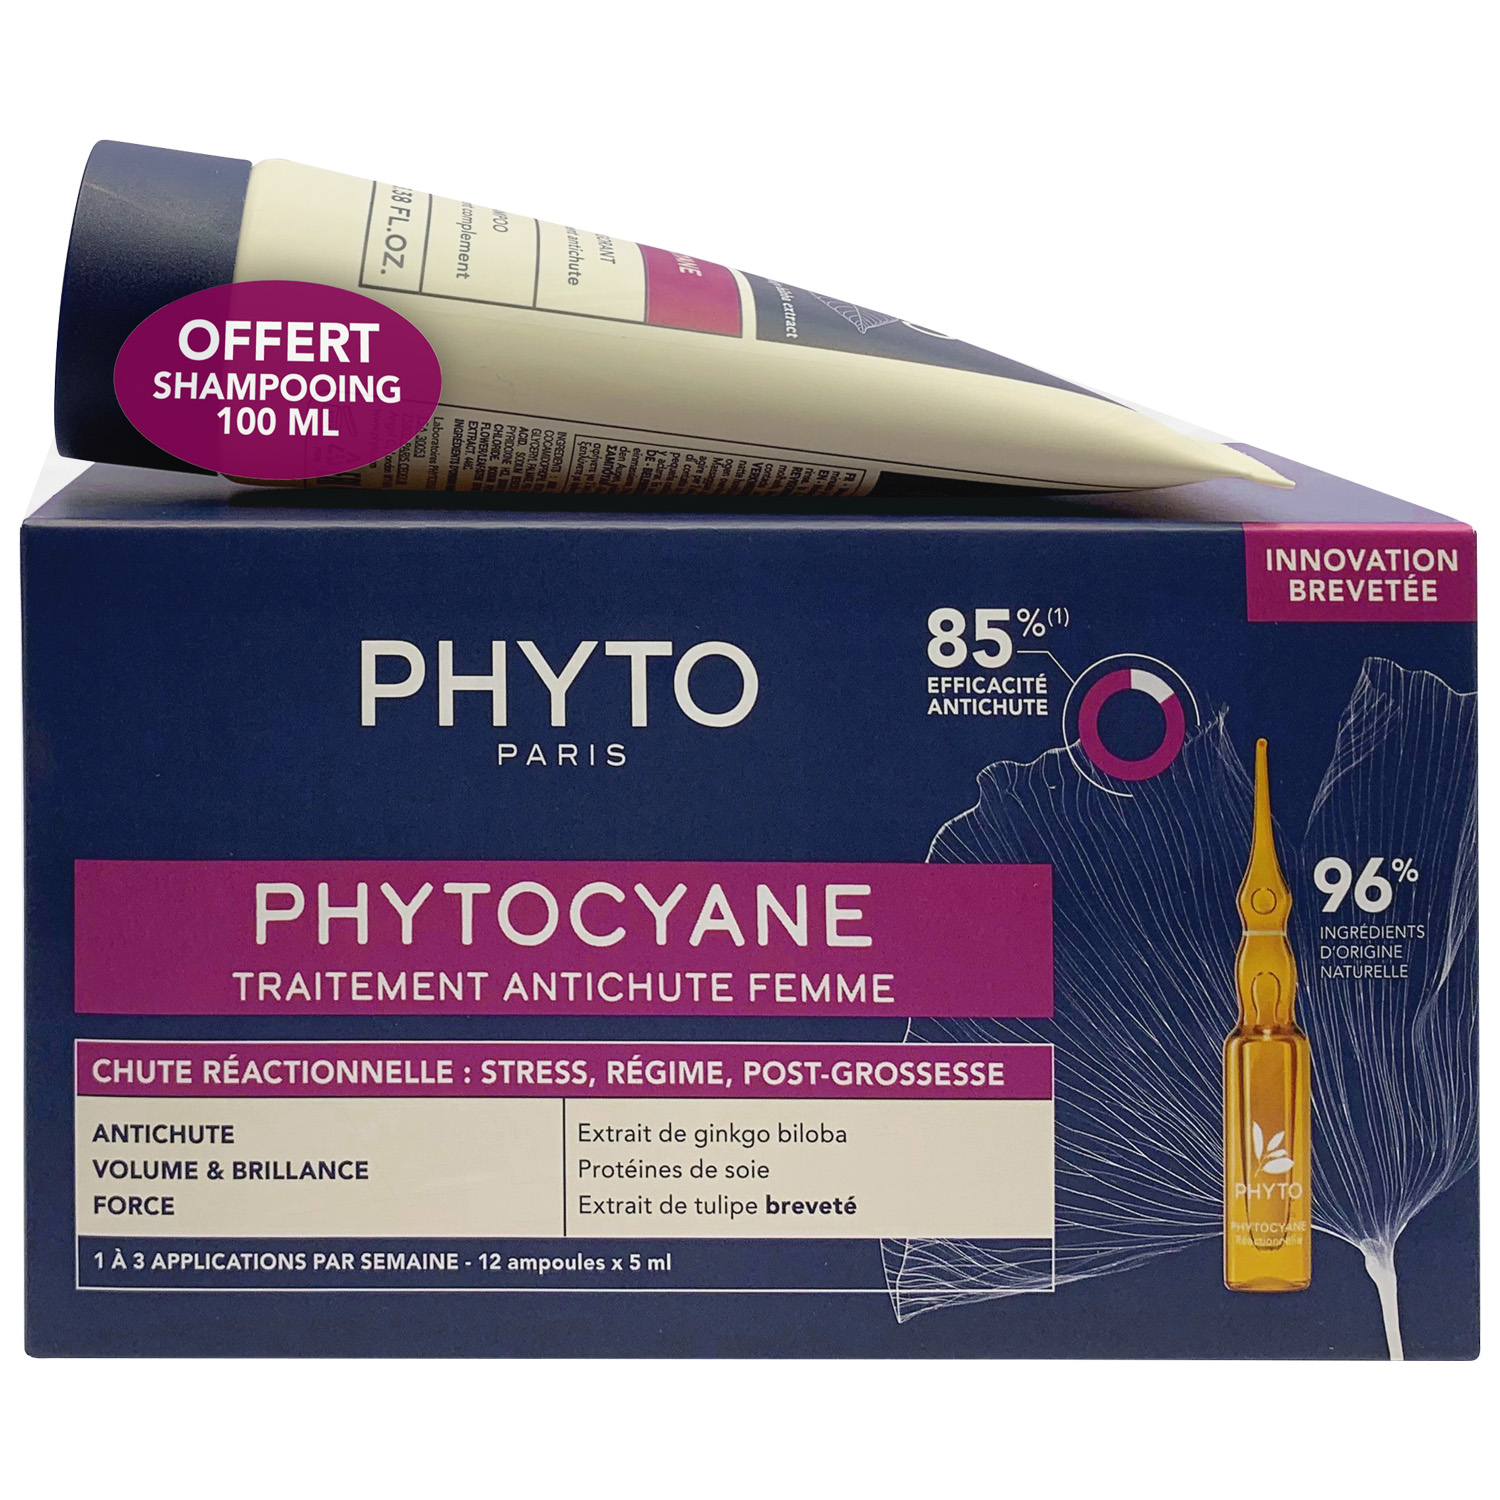 Phyto Набор для женщин: сыворотка от выпадения волос 12x5 мл + укрепляющий шампунь 100 мл (Phyto, Phytocyane) цена и фото